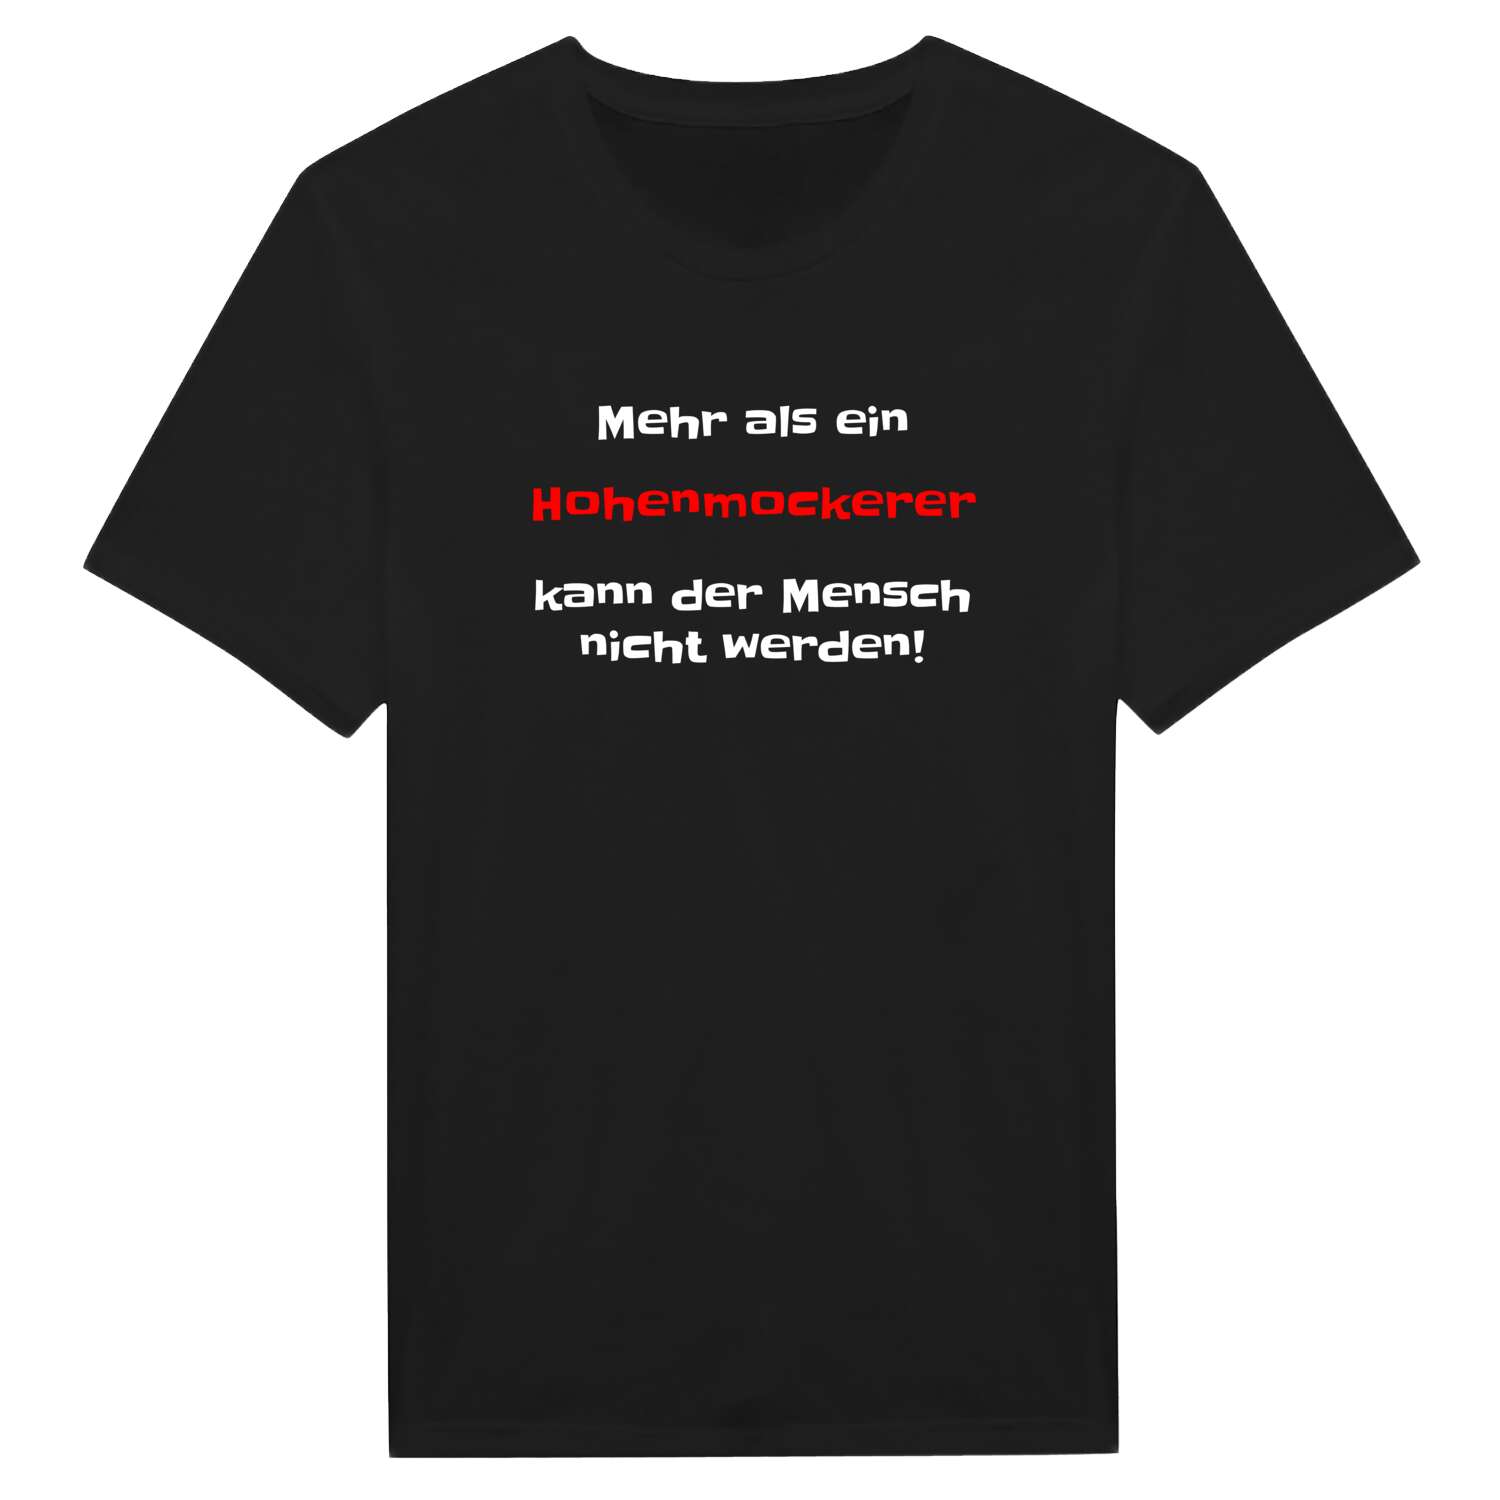 Hohenmocker T-Shirt »Mehr als ein«